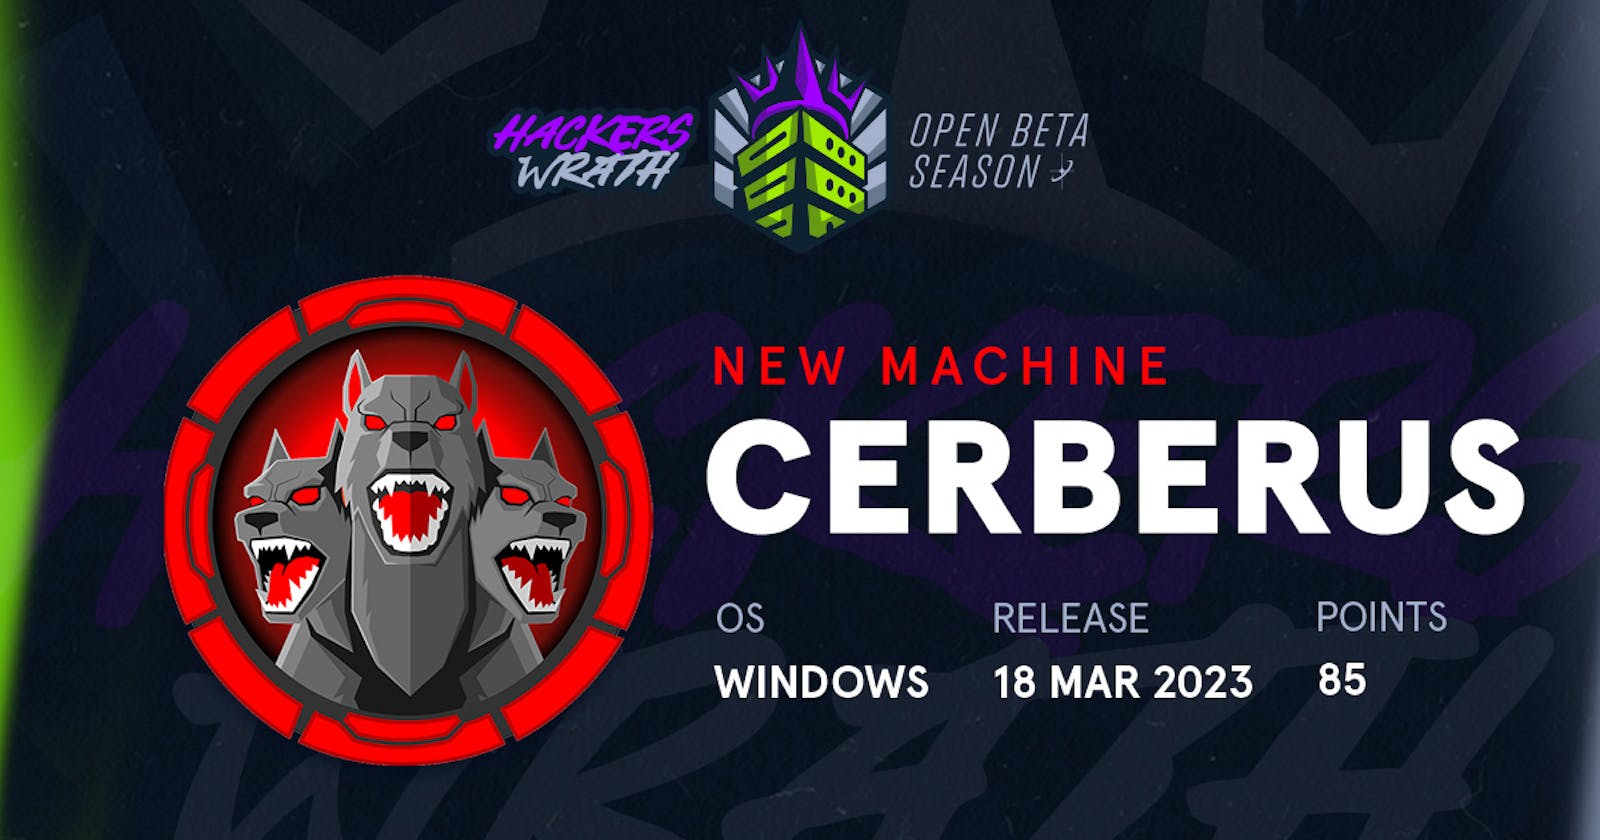 Cerberus - Hackthebox